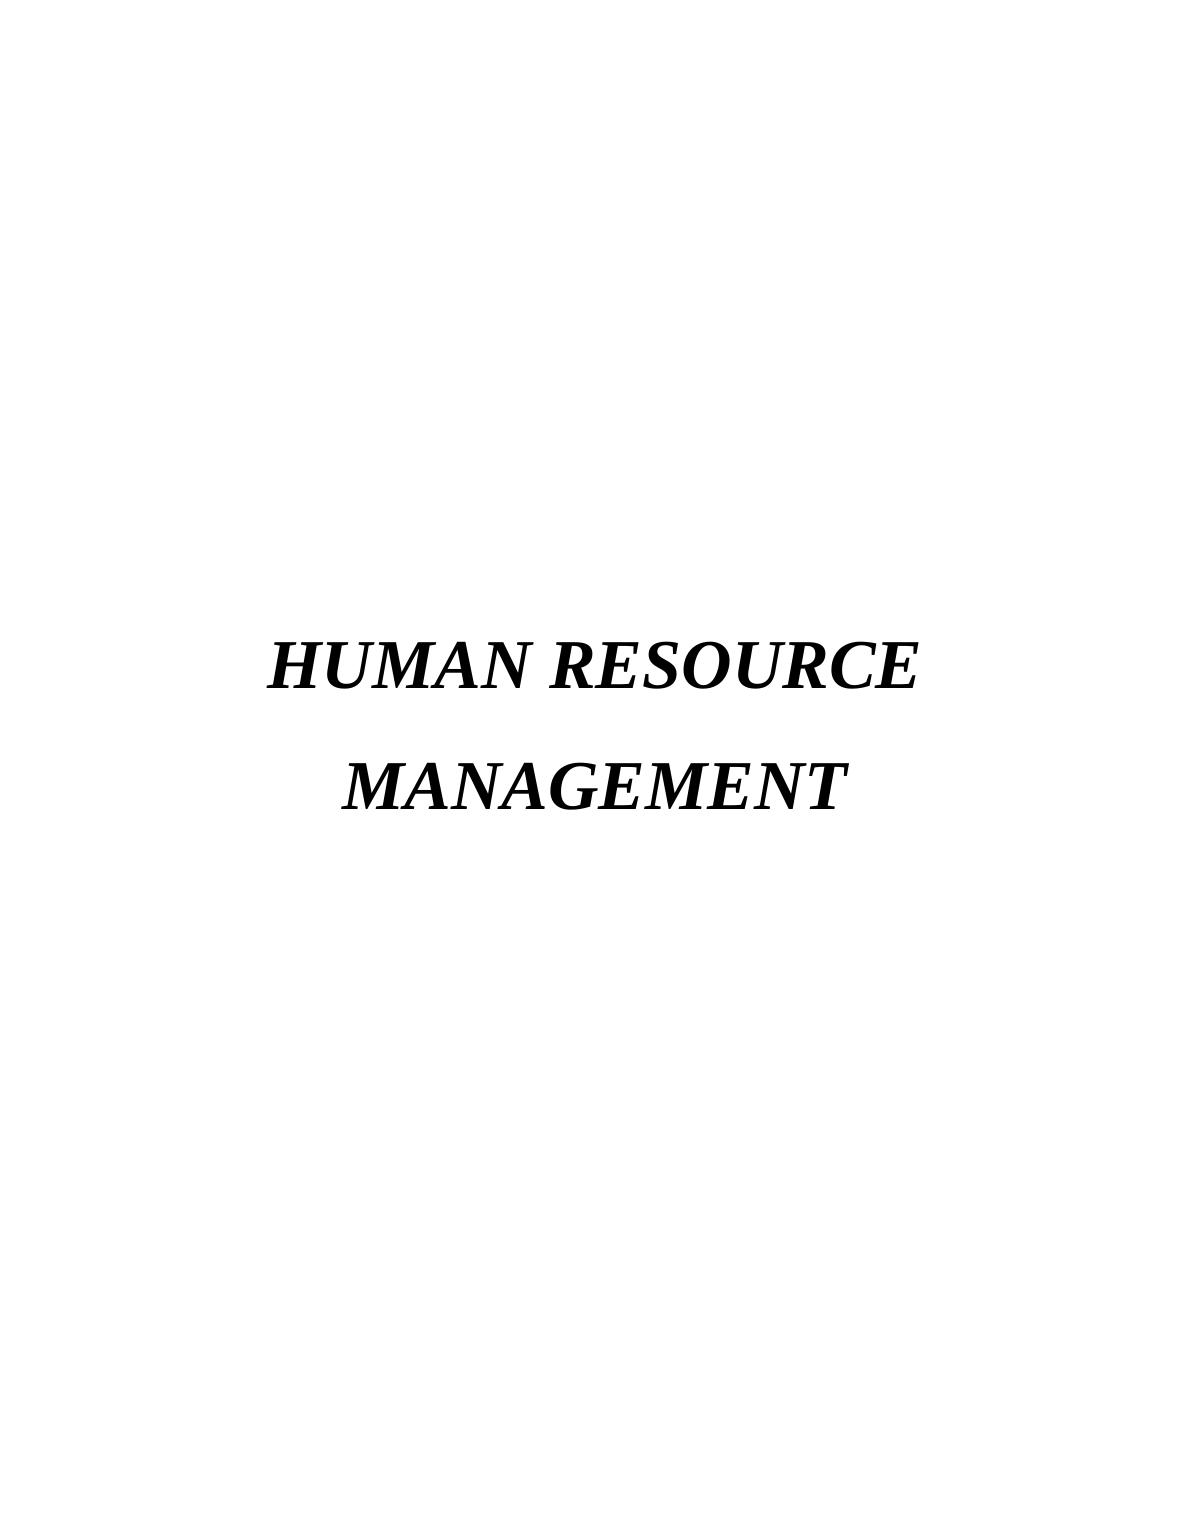 Human Resource Management HRM  Assignment_1